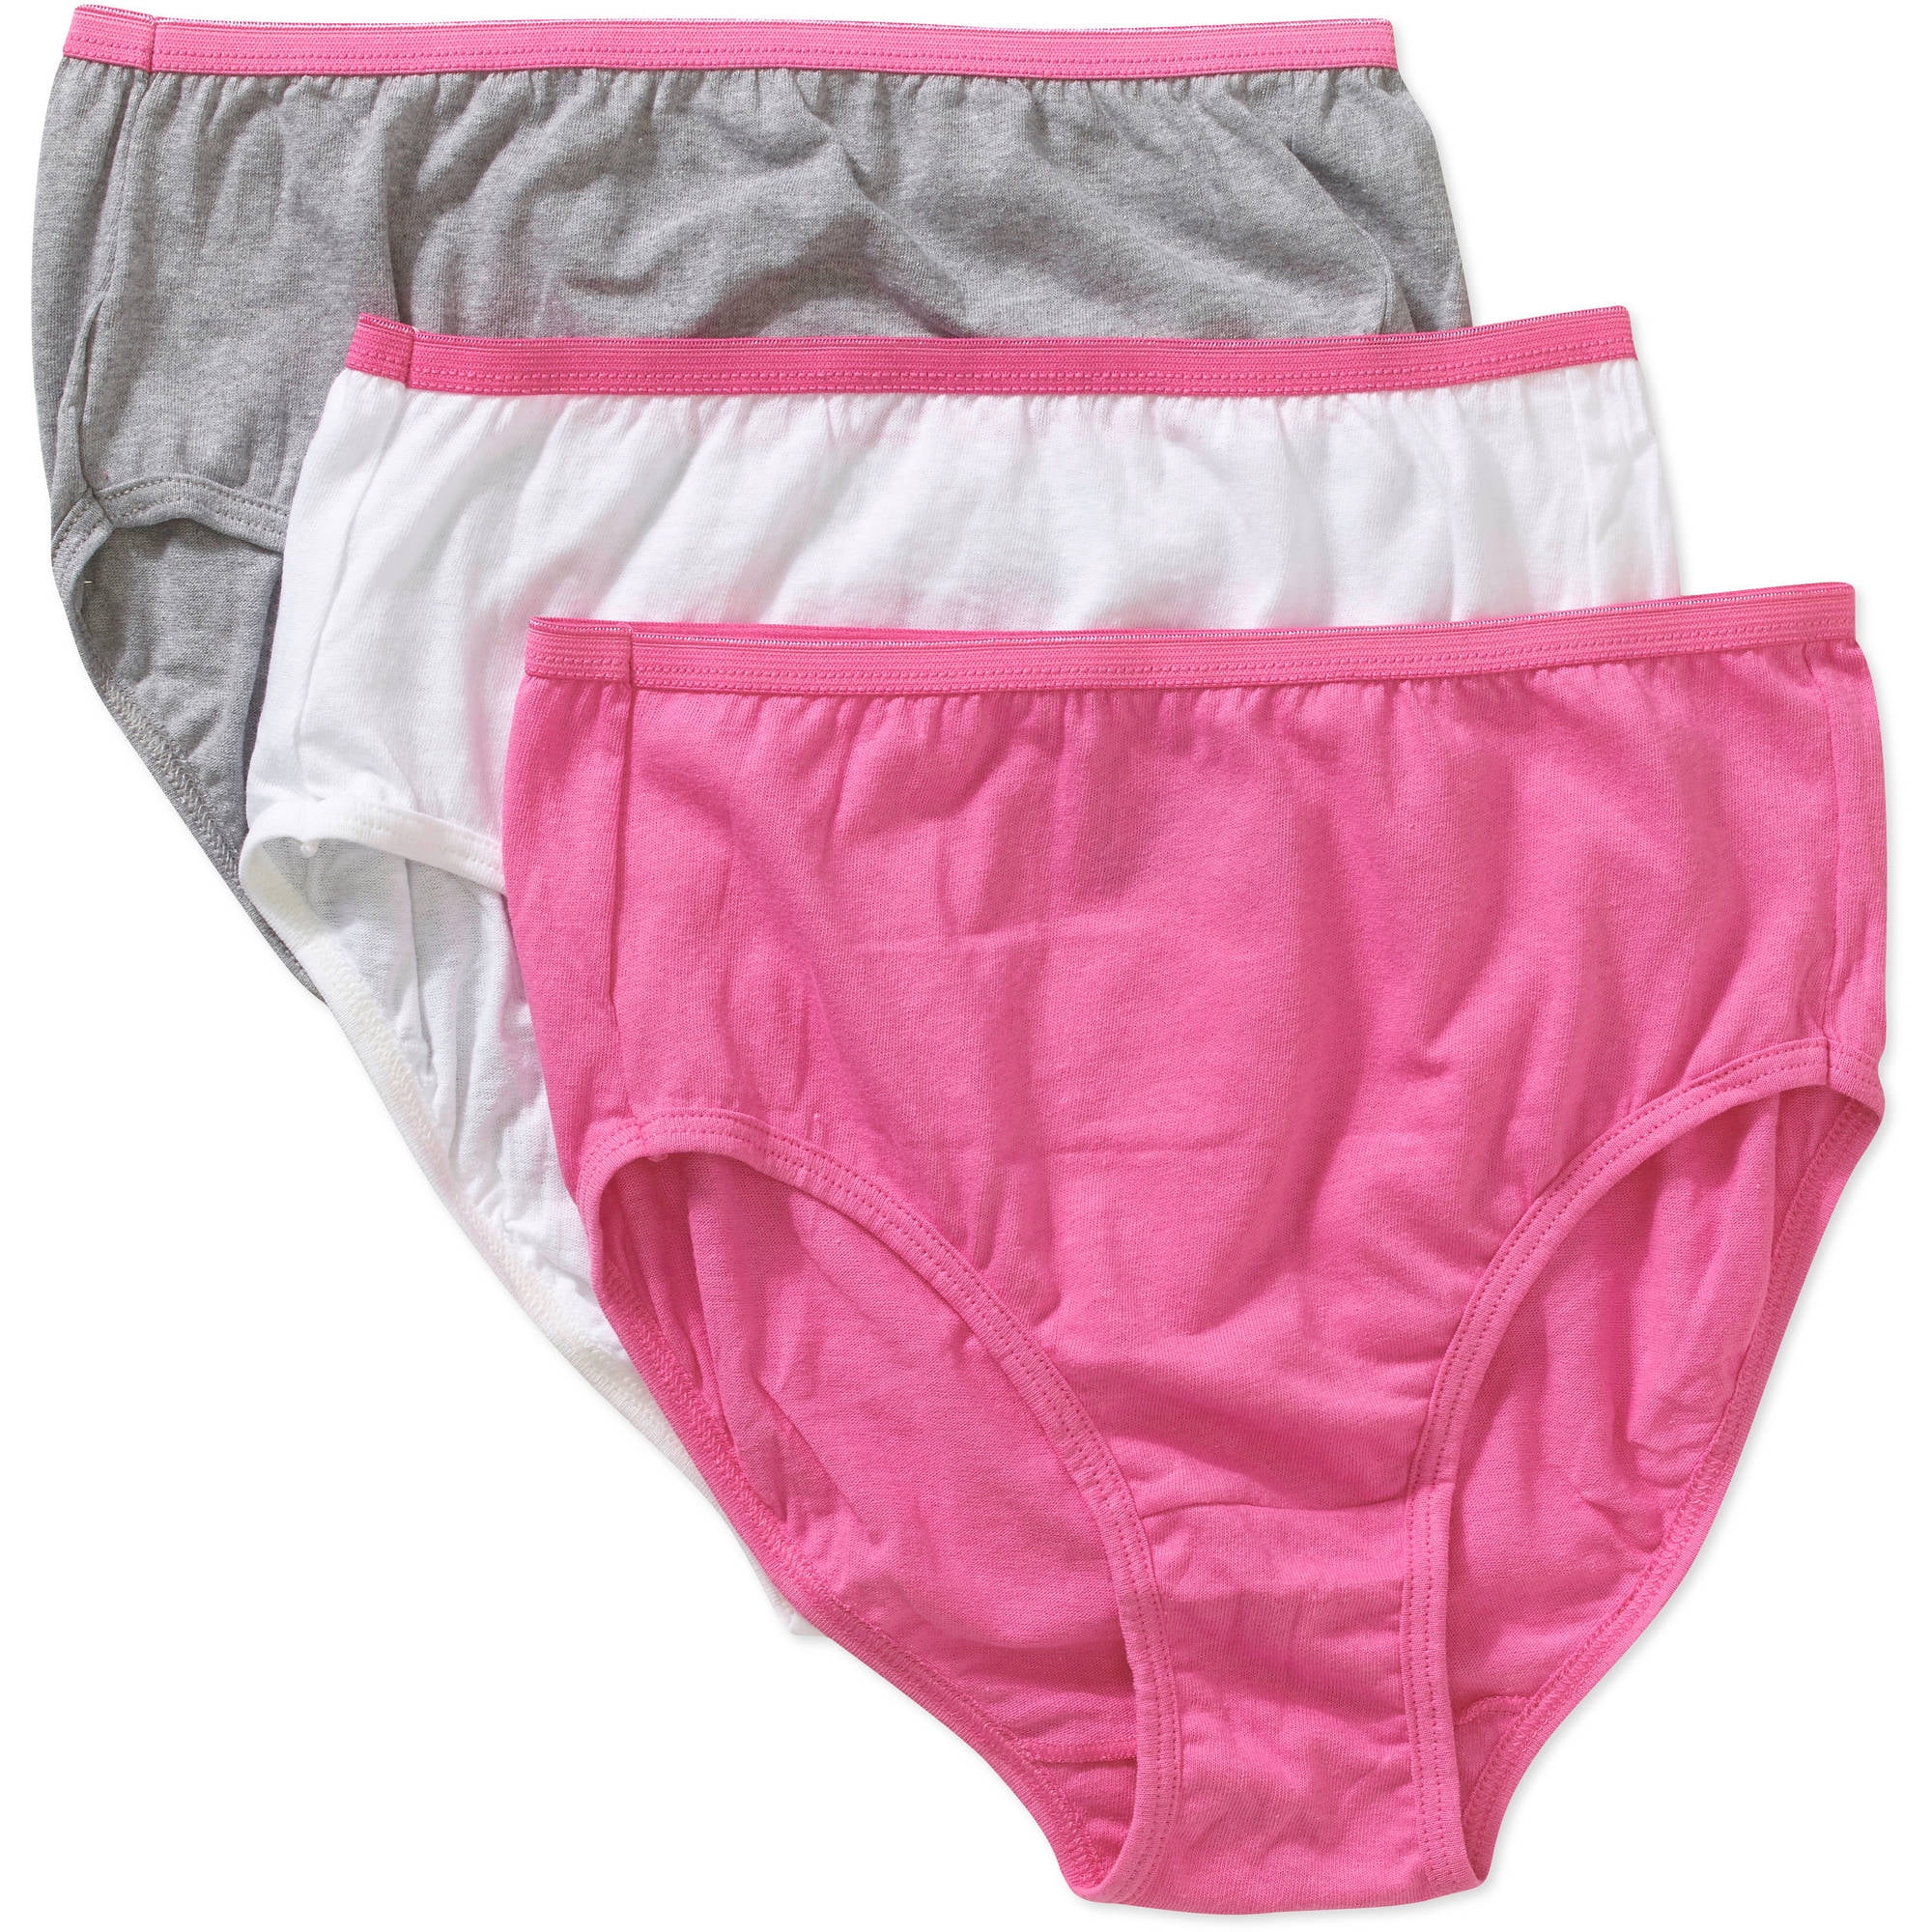 Hanes Girls Underwear, 3 Pack Core Cotton Brief Panties (Little Girls ...